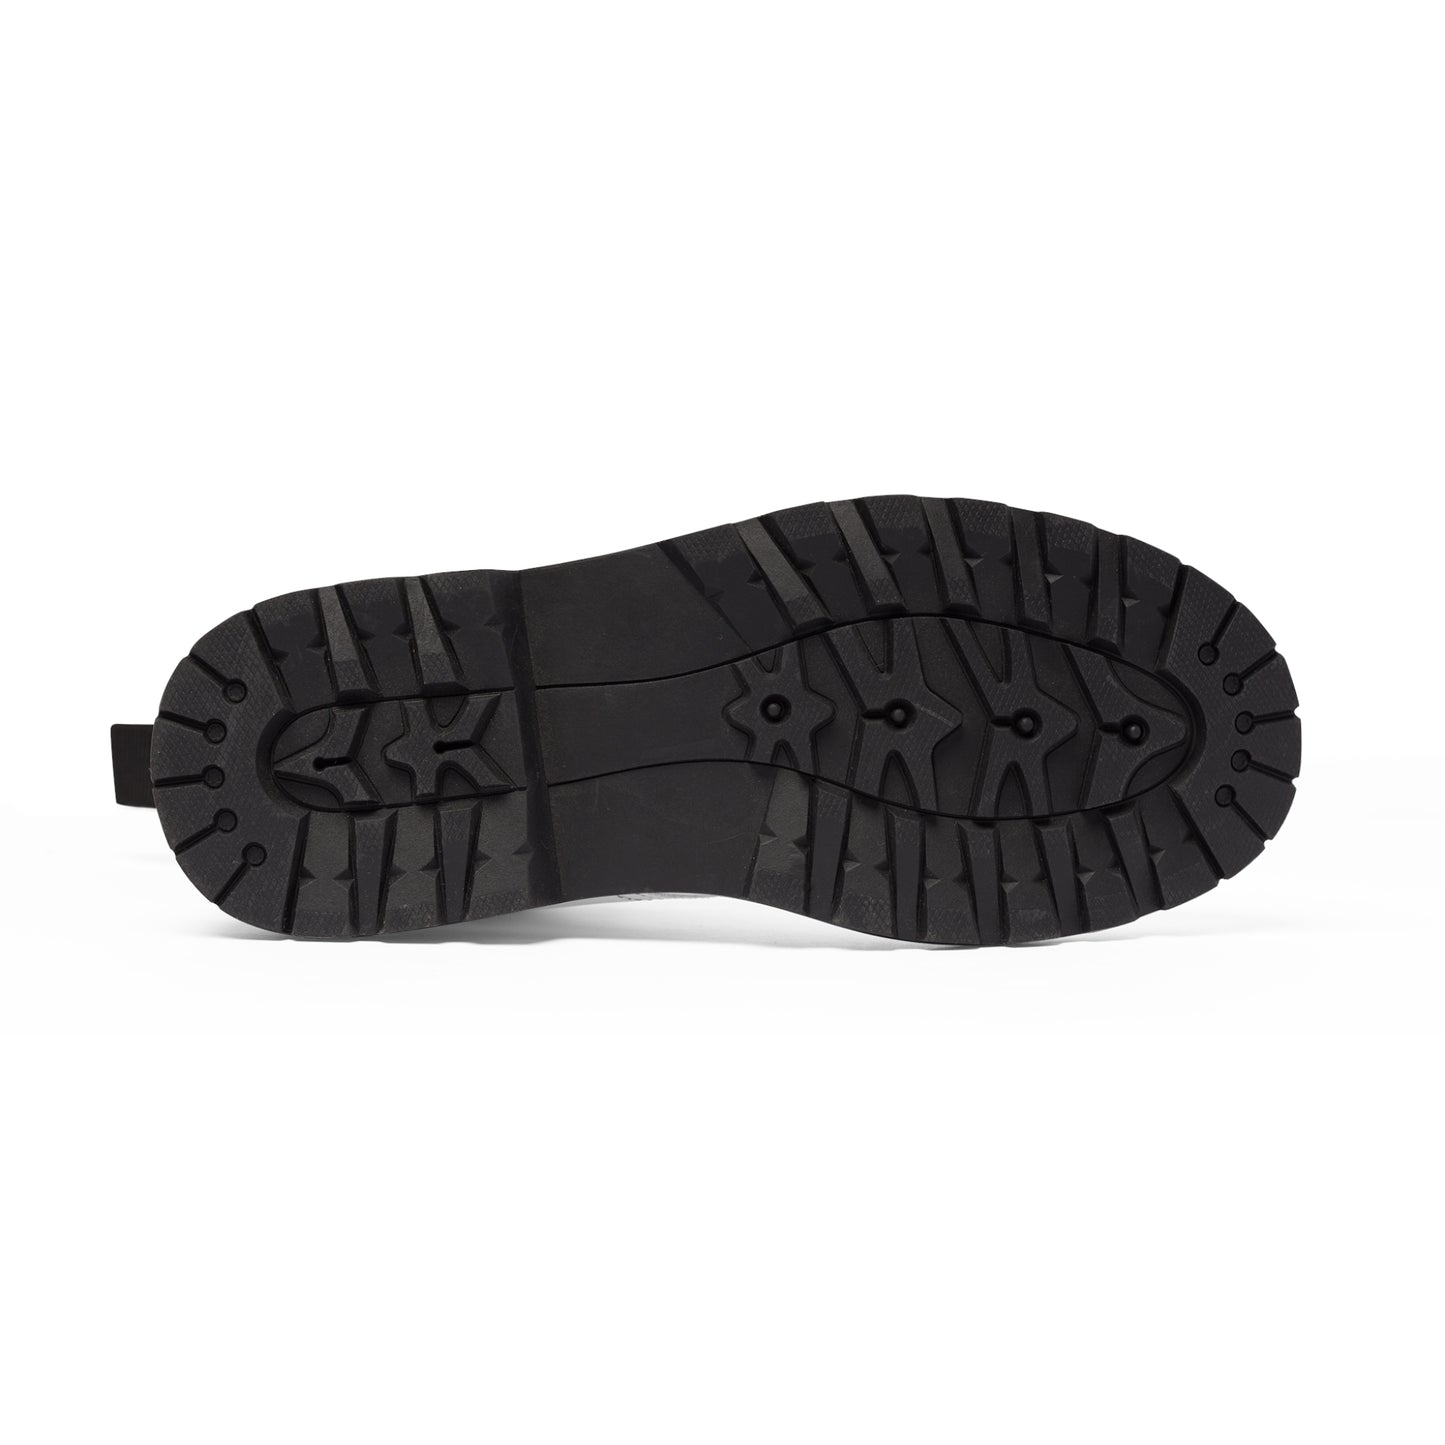 Men's Canvas Boots - 02876 US 10.5 Black sole